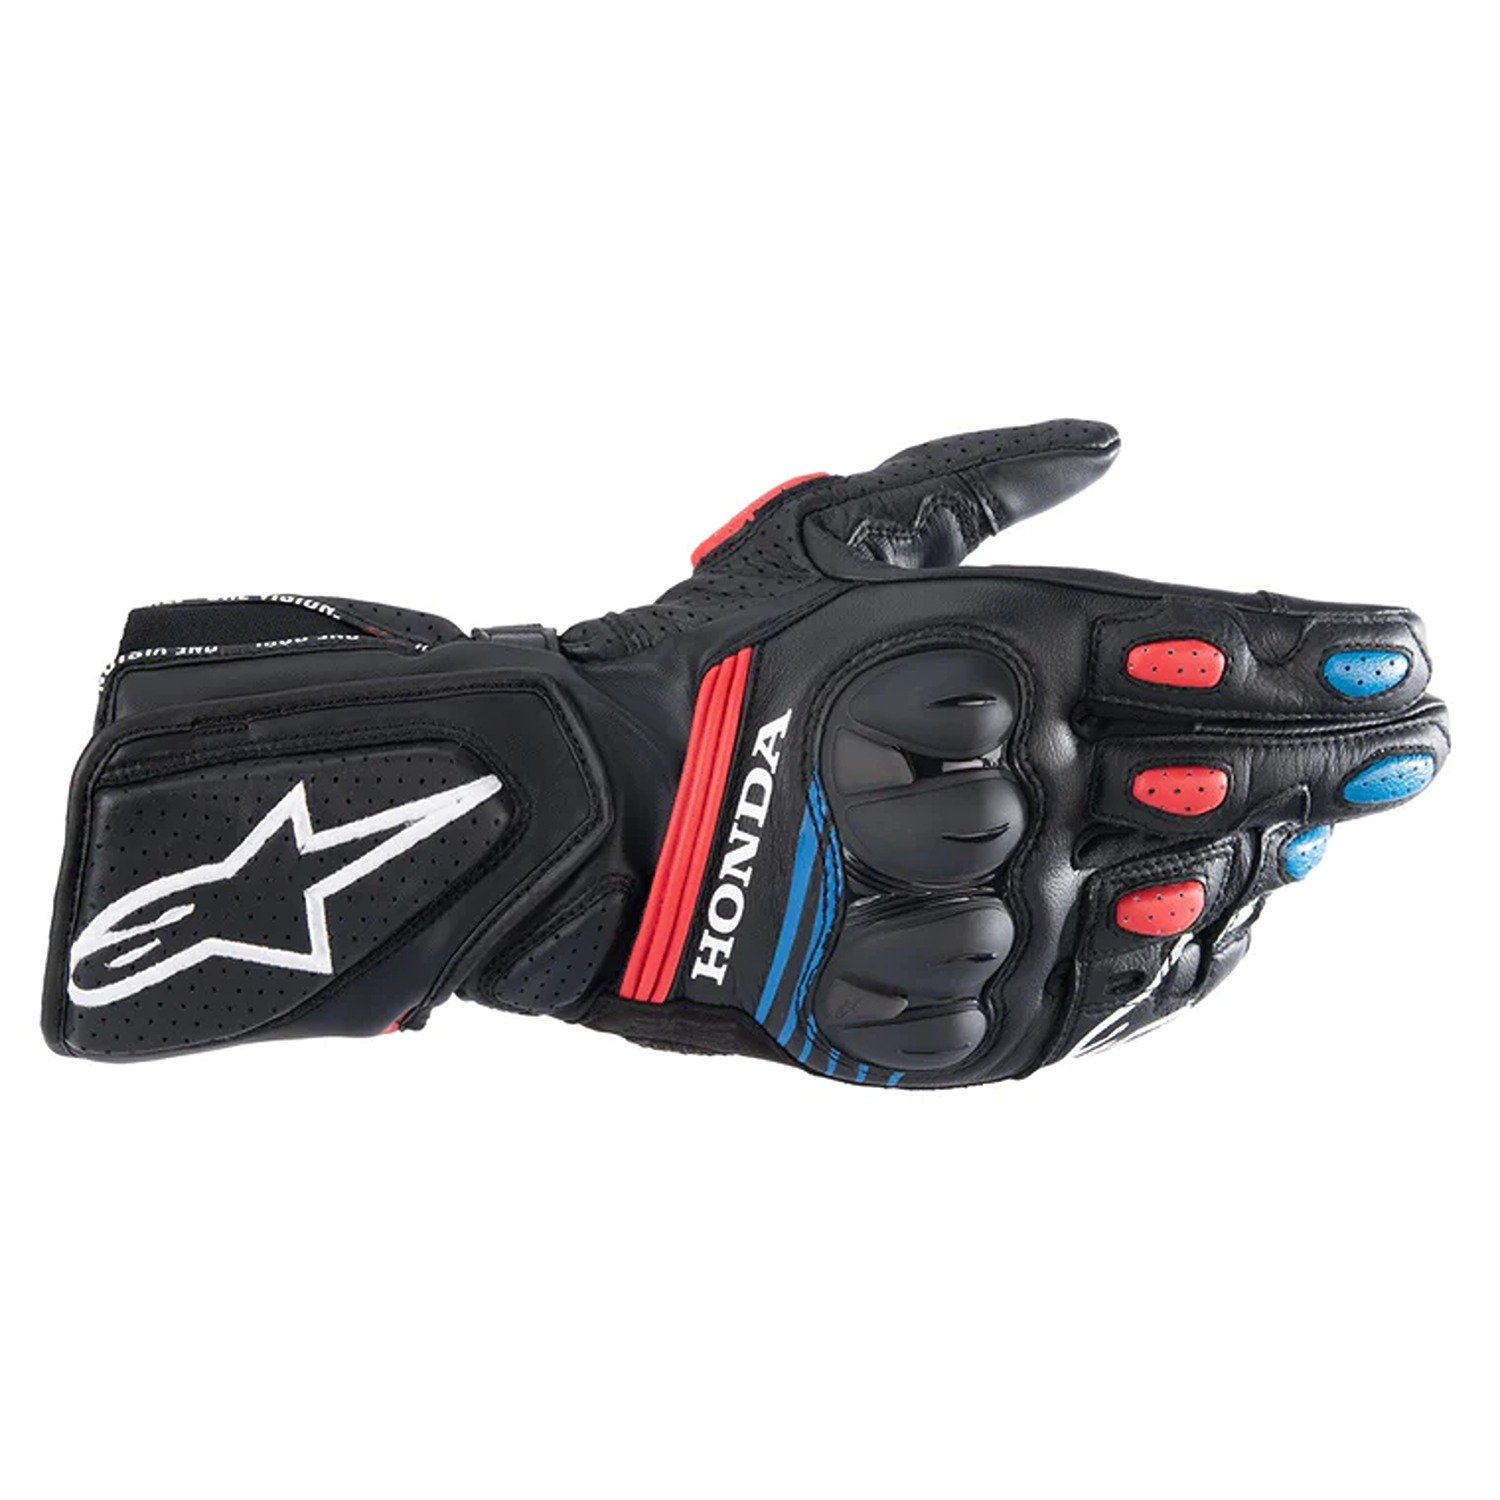 Image of Alpinestars Honda SP-8 V3 Gloves Black Bright Red Blue Size 2XL ID 8059347168135